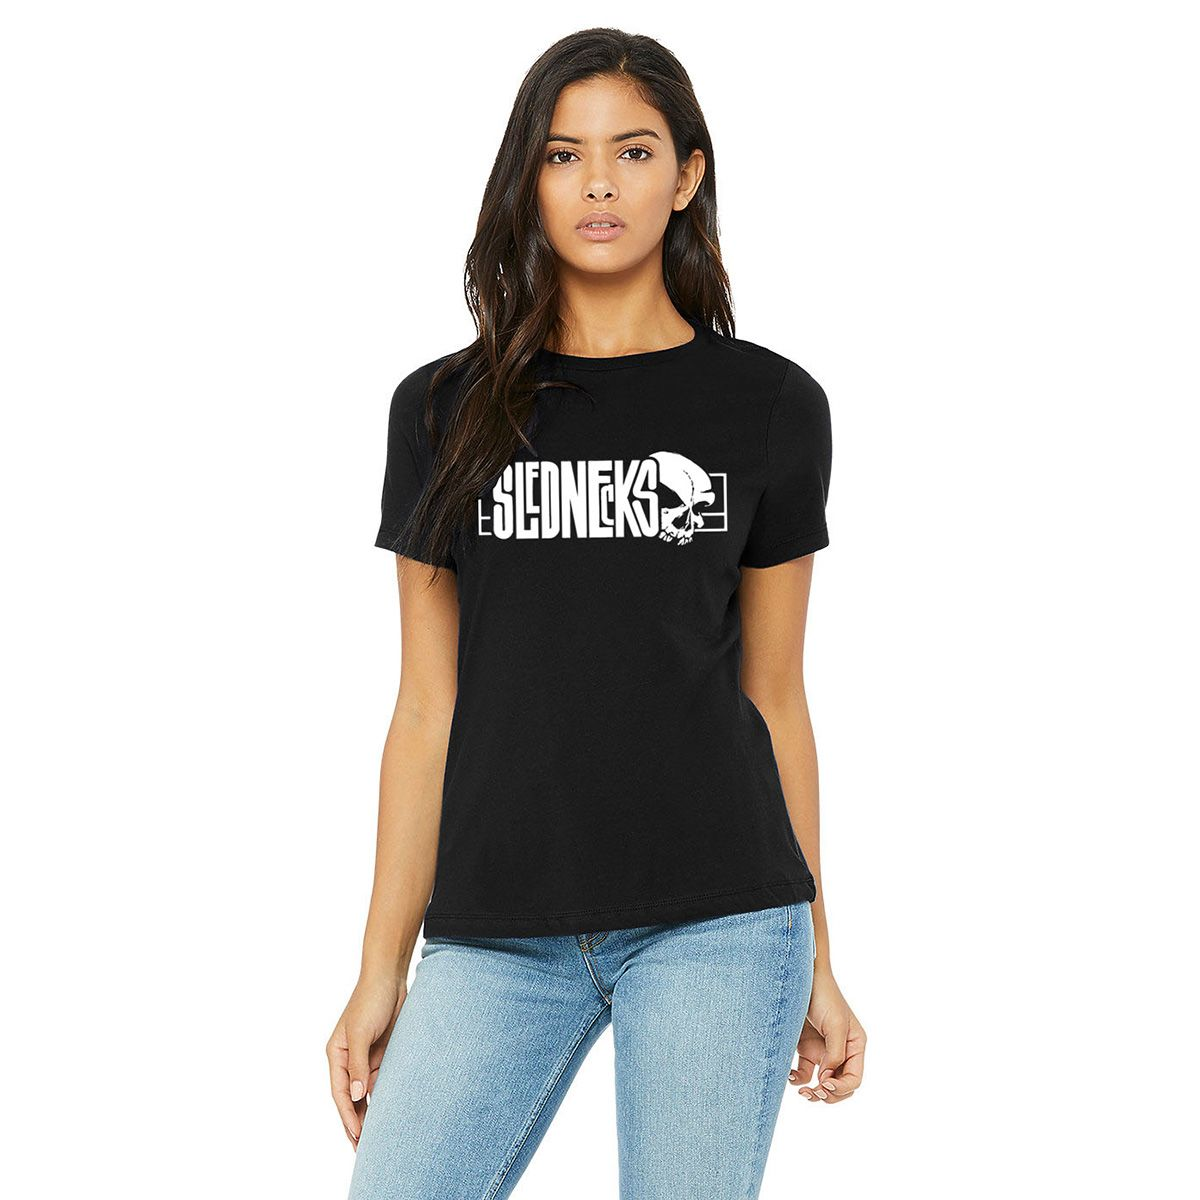 slednecks t-shirt shirts for womens og